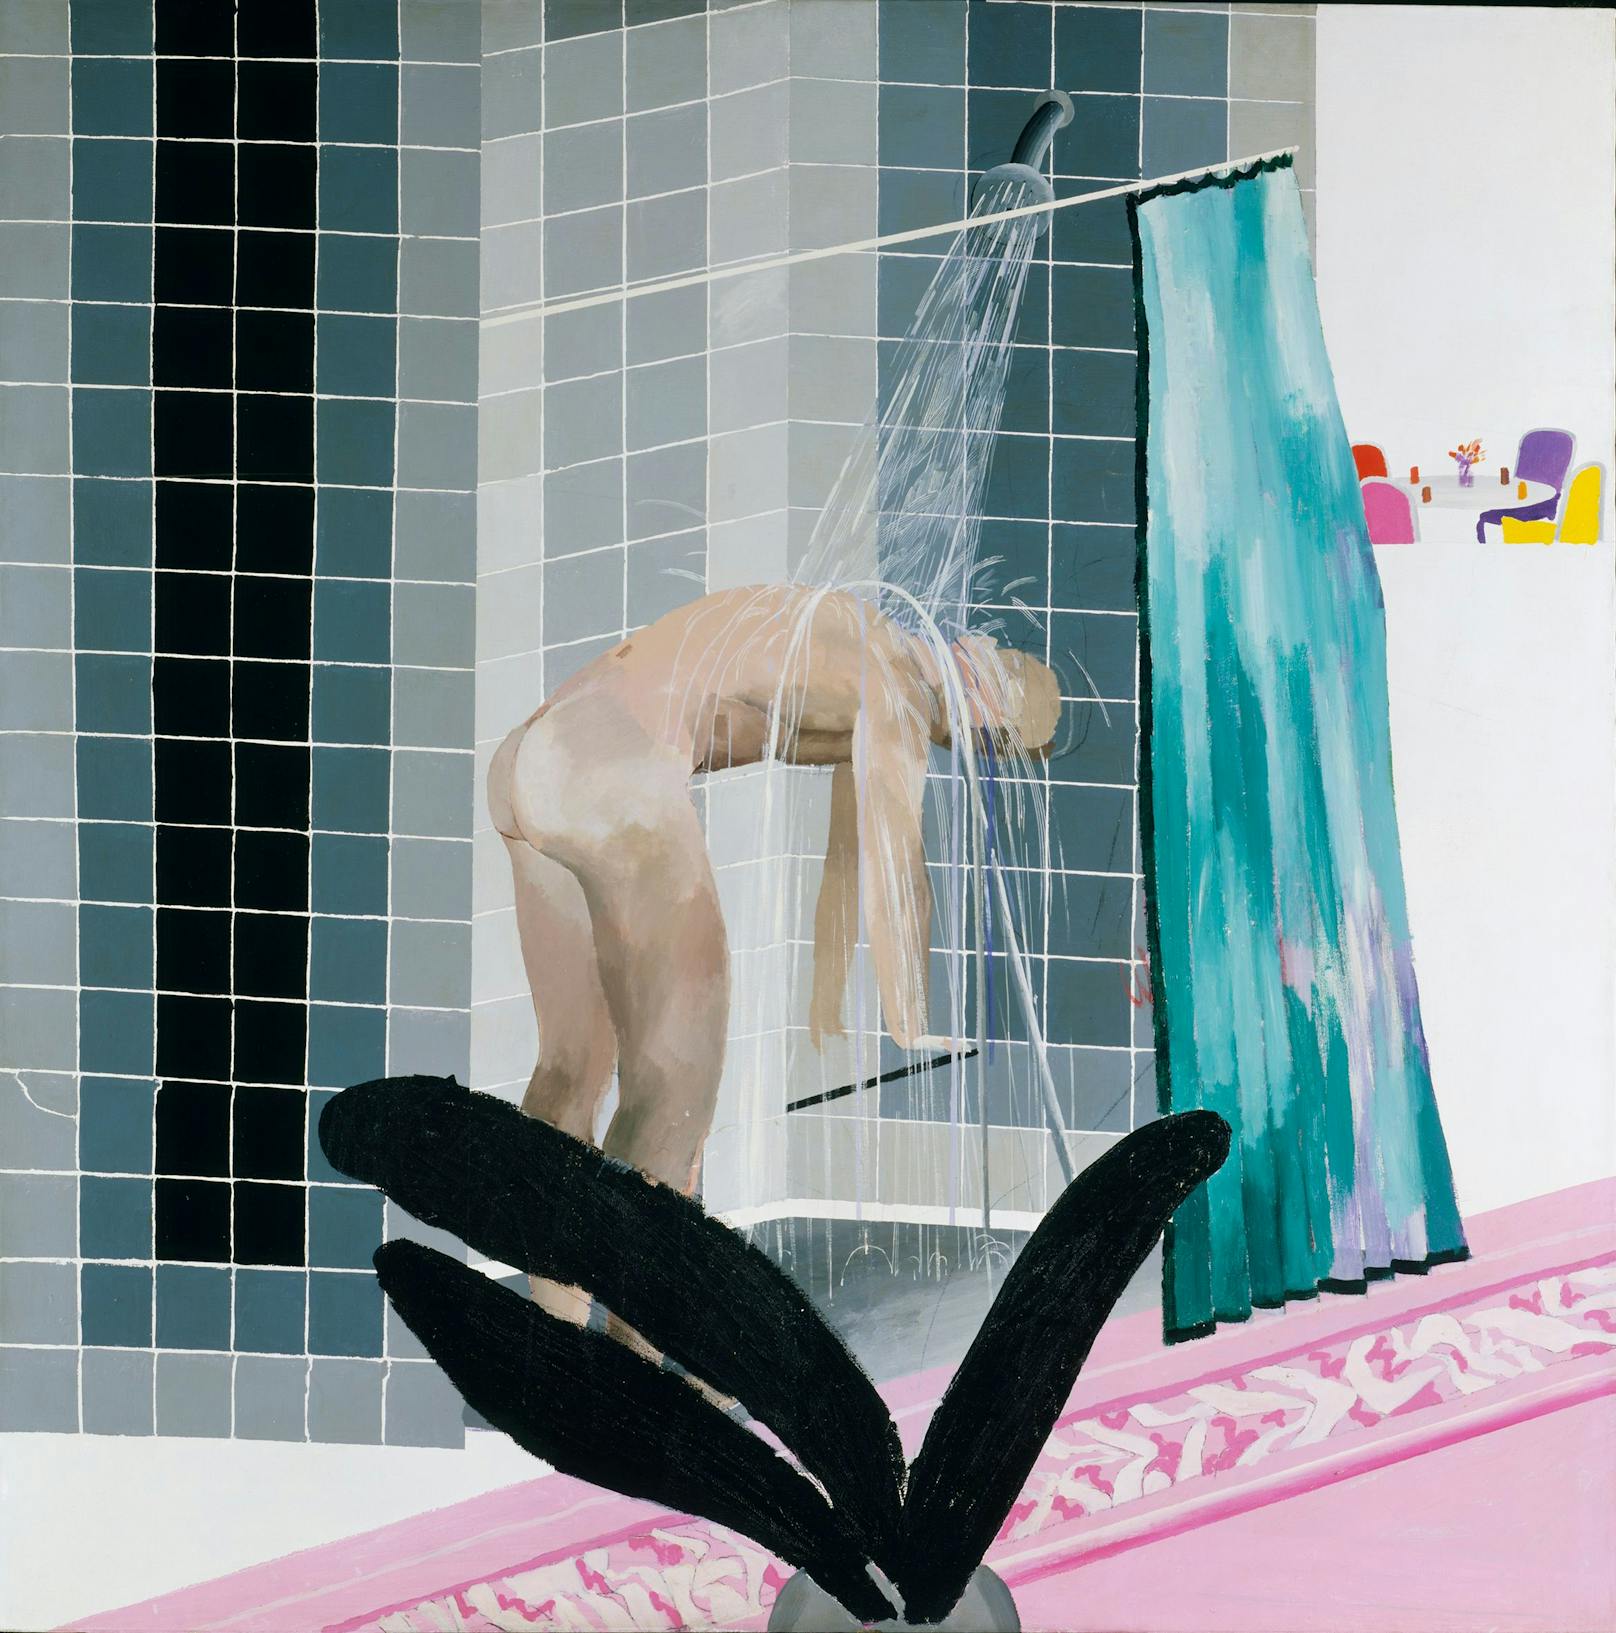 Bei der Ausstellung im Bank Austria Kunstforum wird unter anderem das Bild "Man in Shower in Beverly Hills" zu sehen sein.